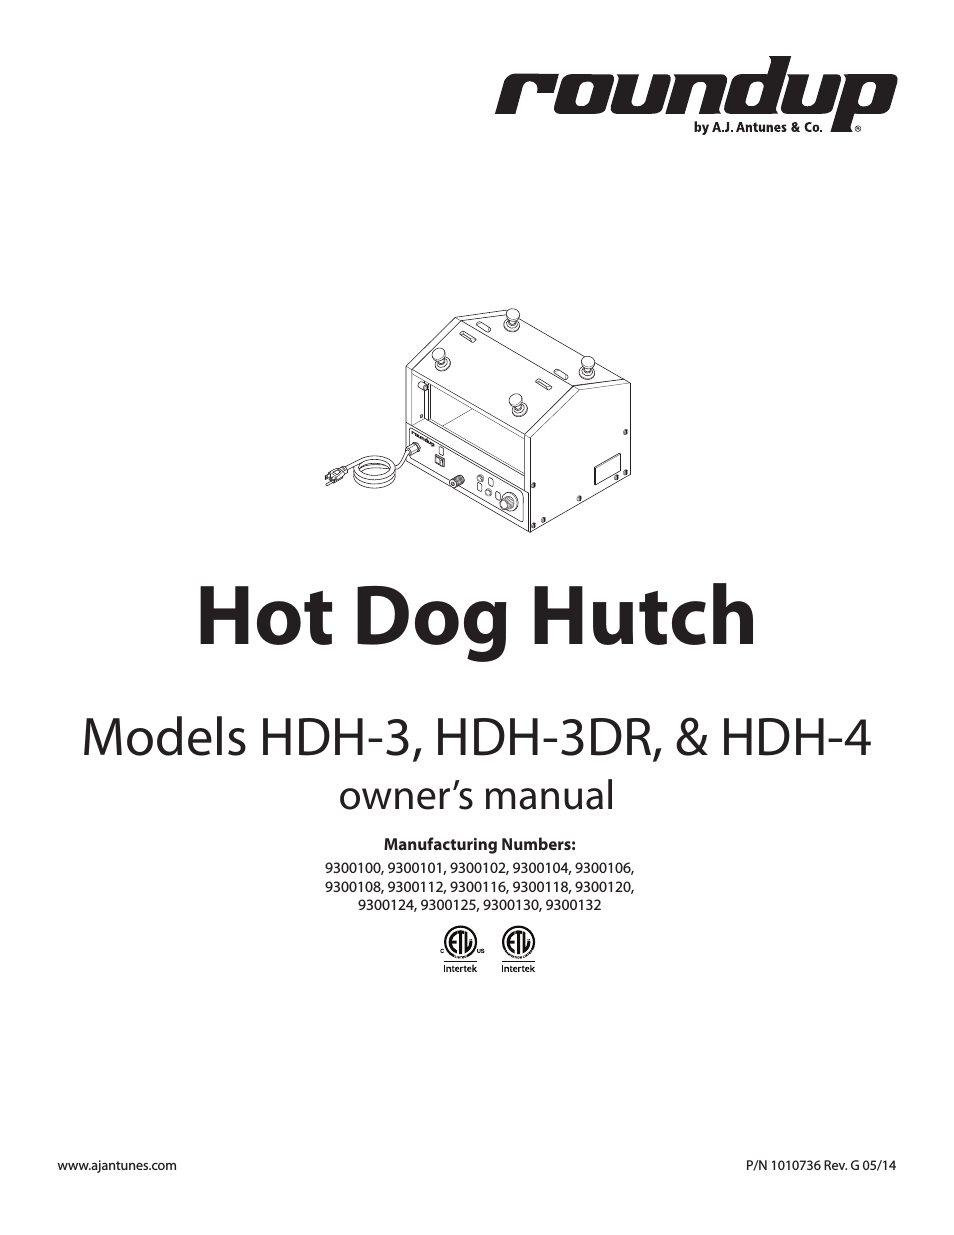 HDH-3 9300102